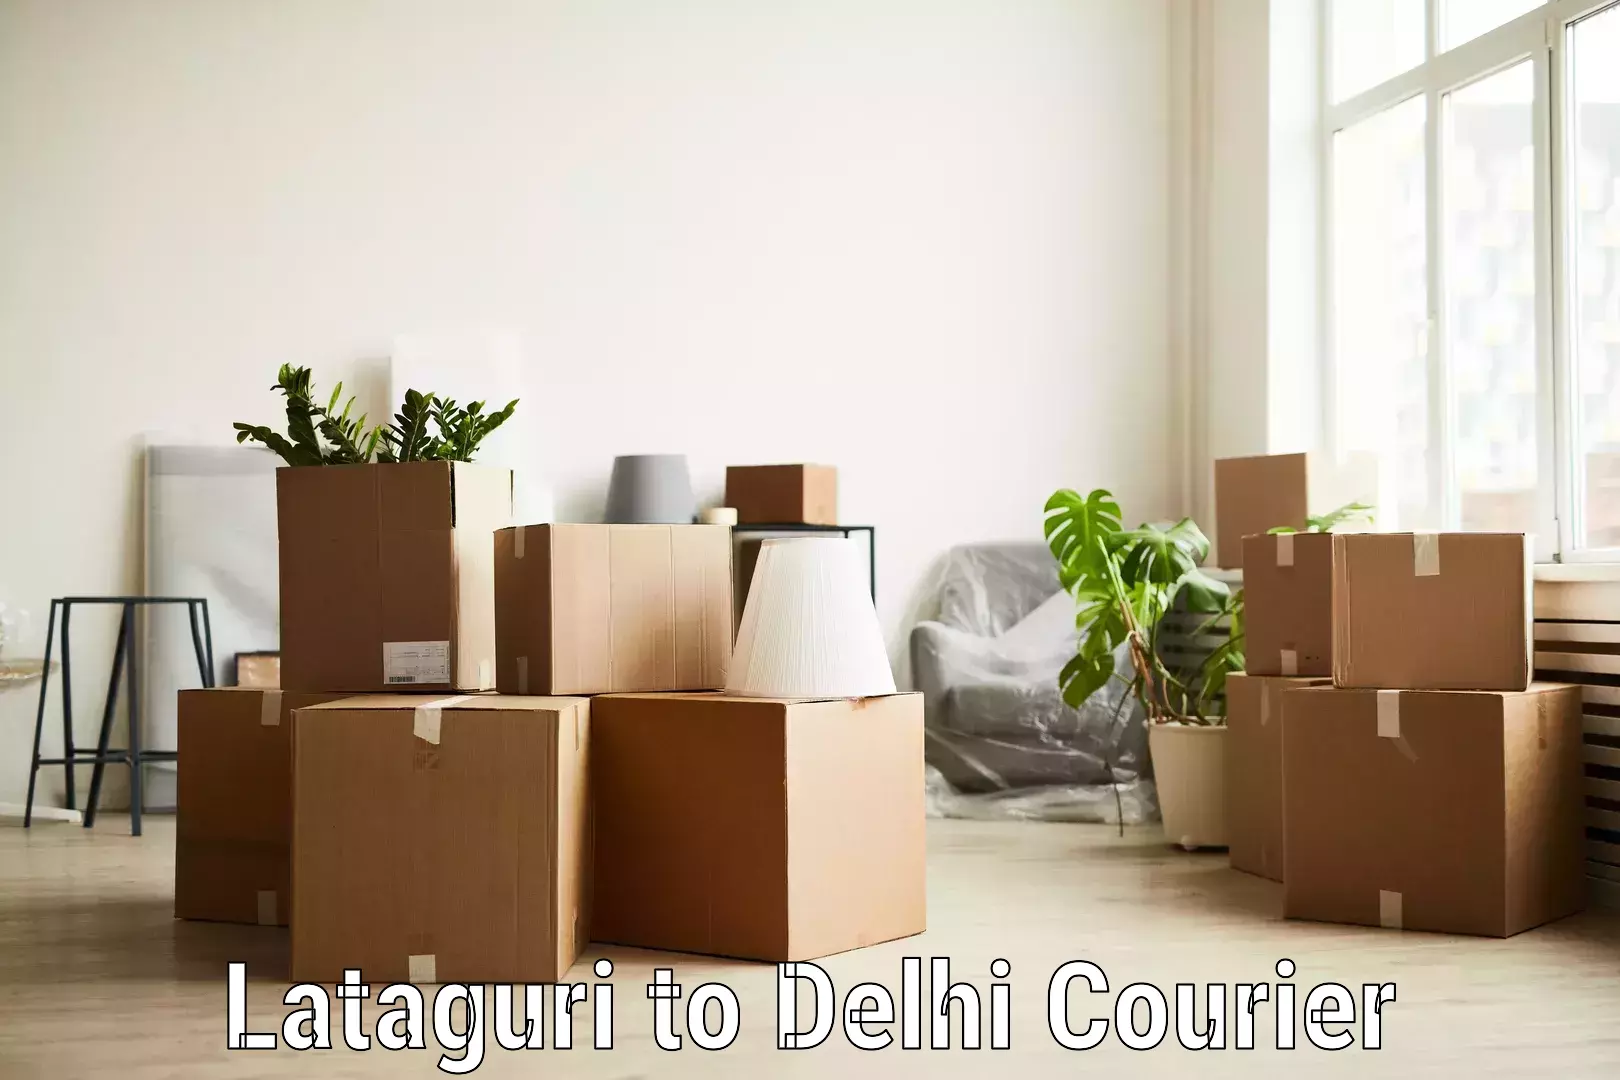 Courier app Lataguri to Sarojini Nagar